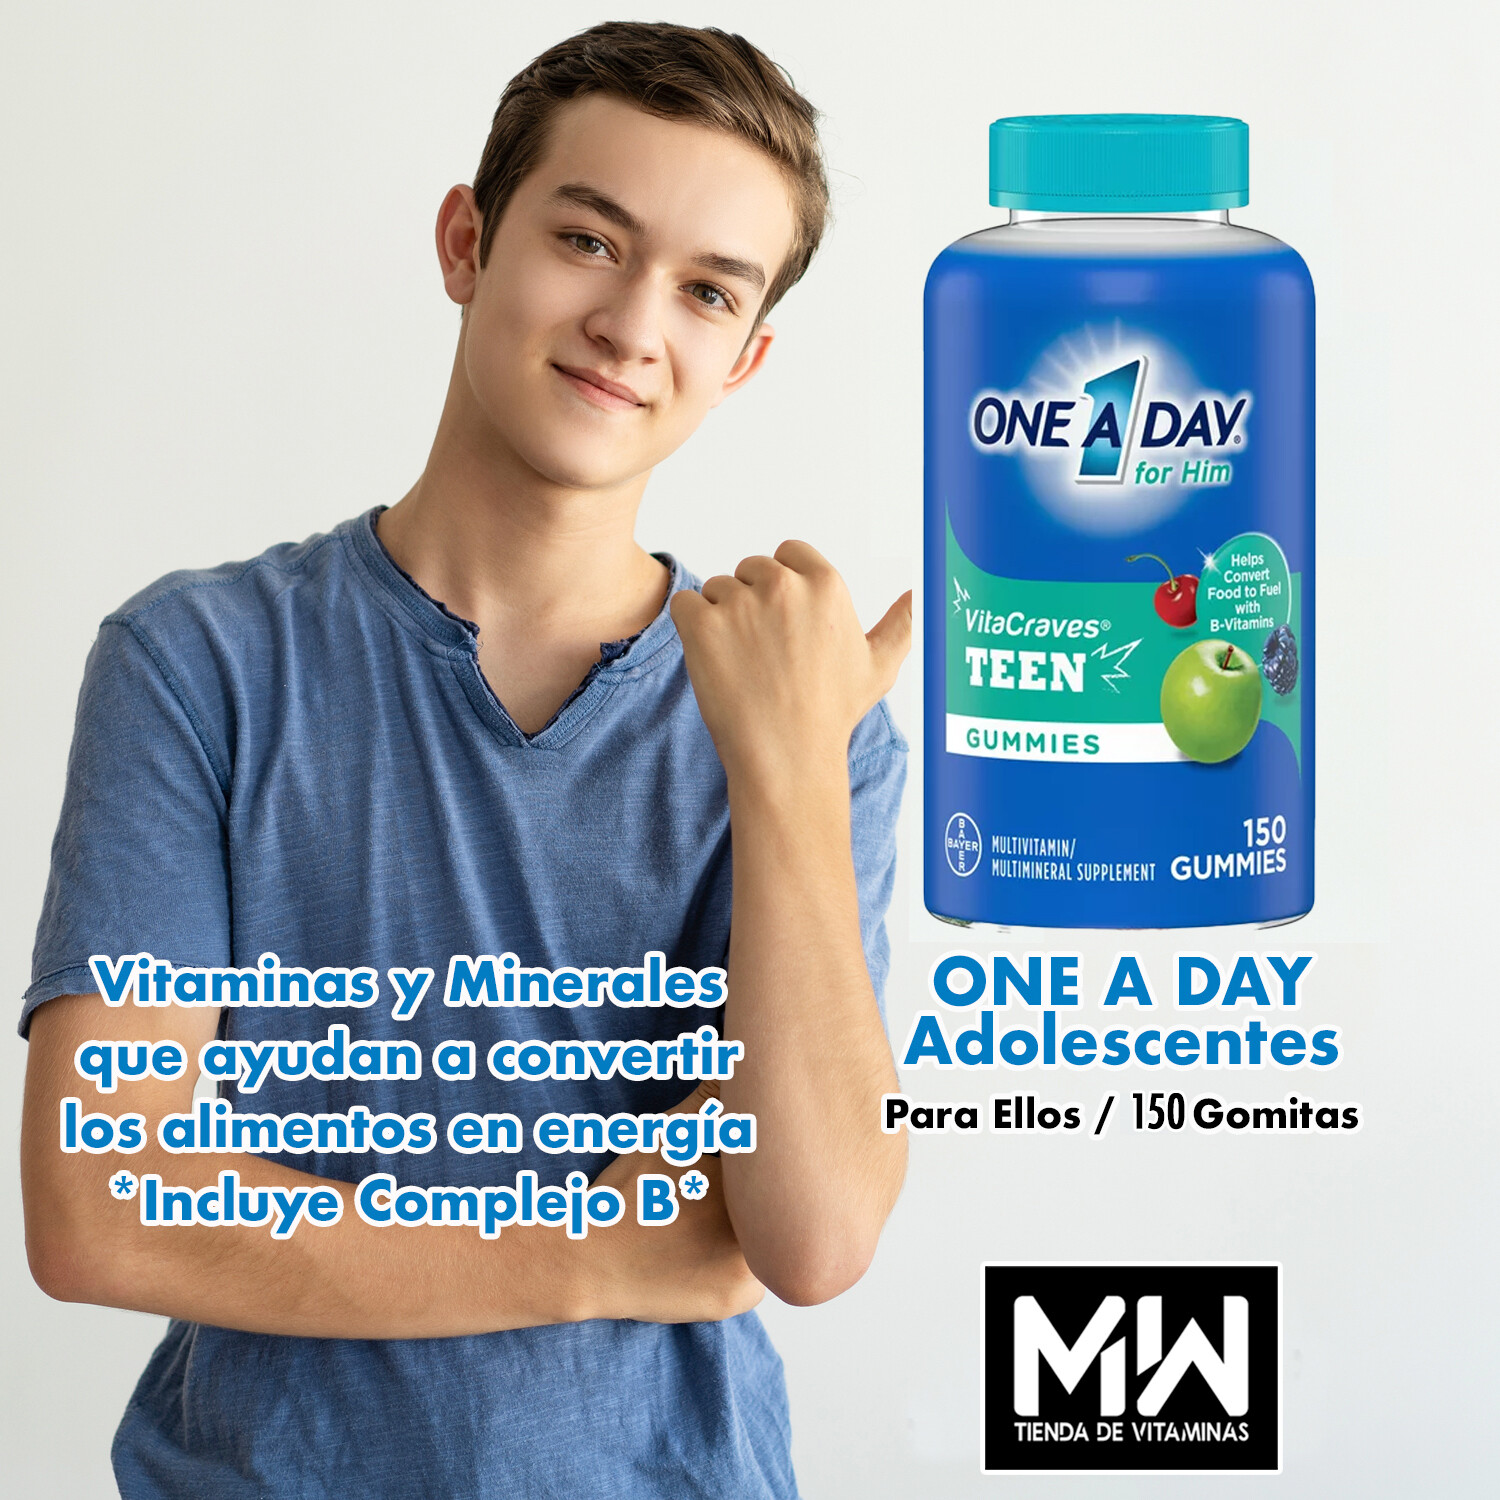 One A Day Multi vitaminas Teen para El, 150 gomitas / One a Day Multi vitamin Teen for him gummies